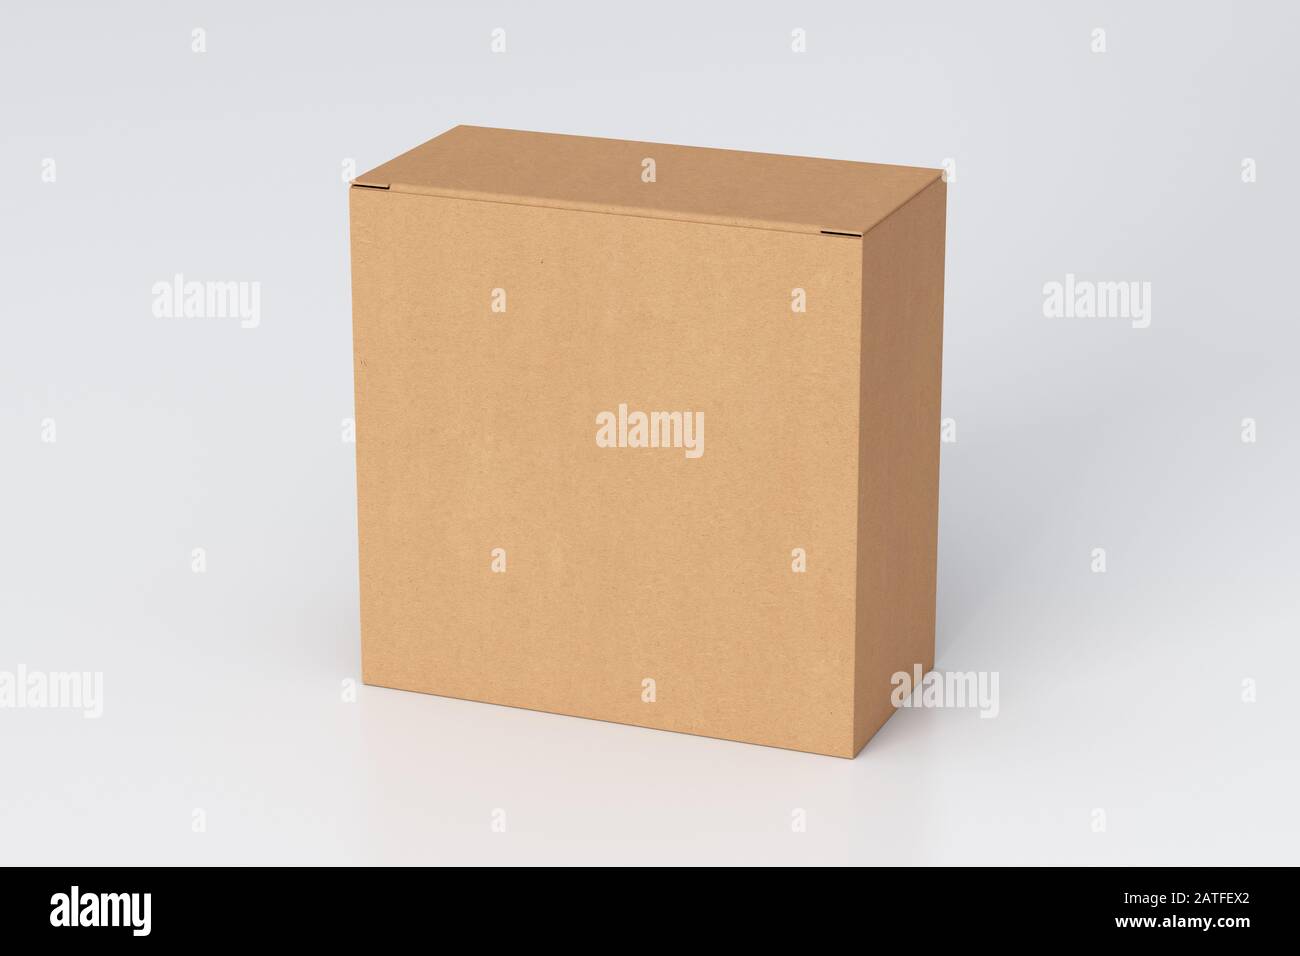 Boîte carrée large en carton vierge avec couvercle à rabat fermé sur fond blanc. Chemin de détourage autour de la maquette de boîte Banque D'Images